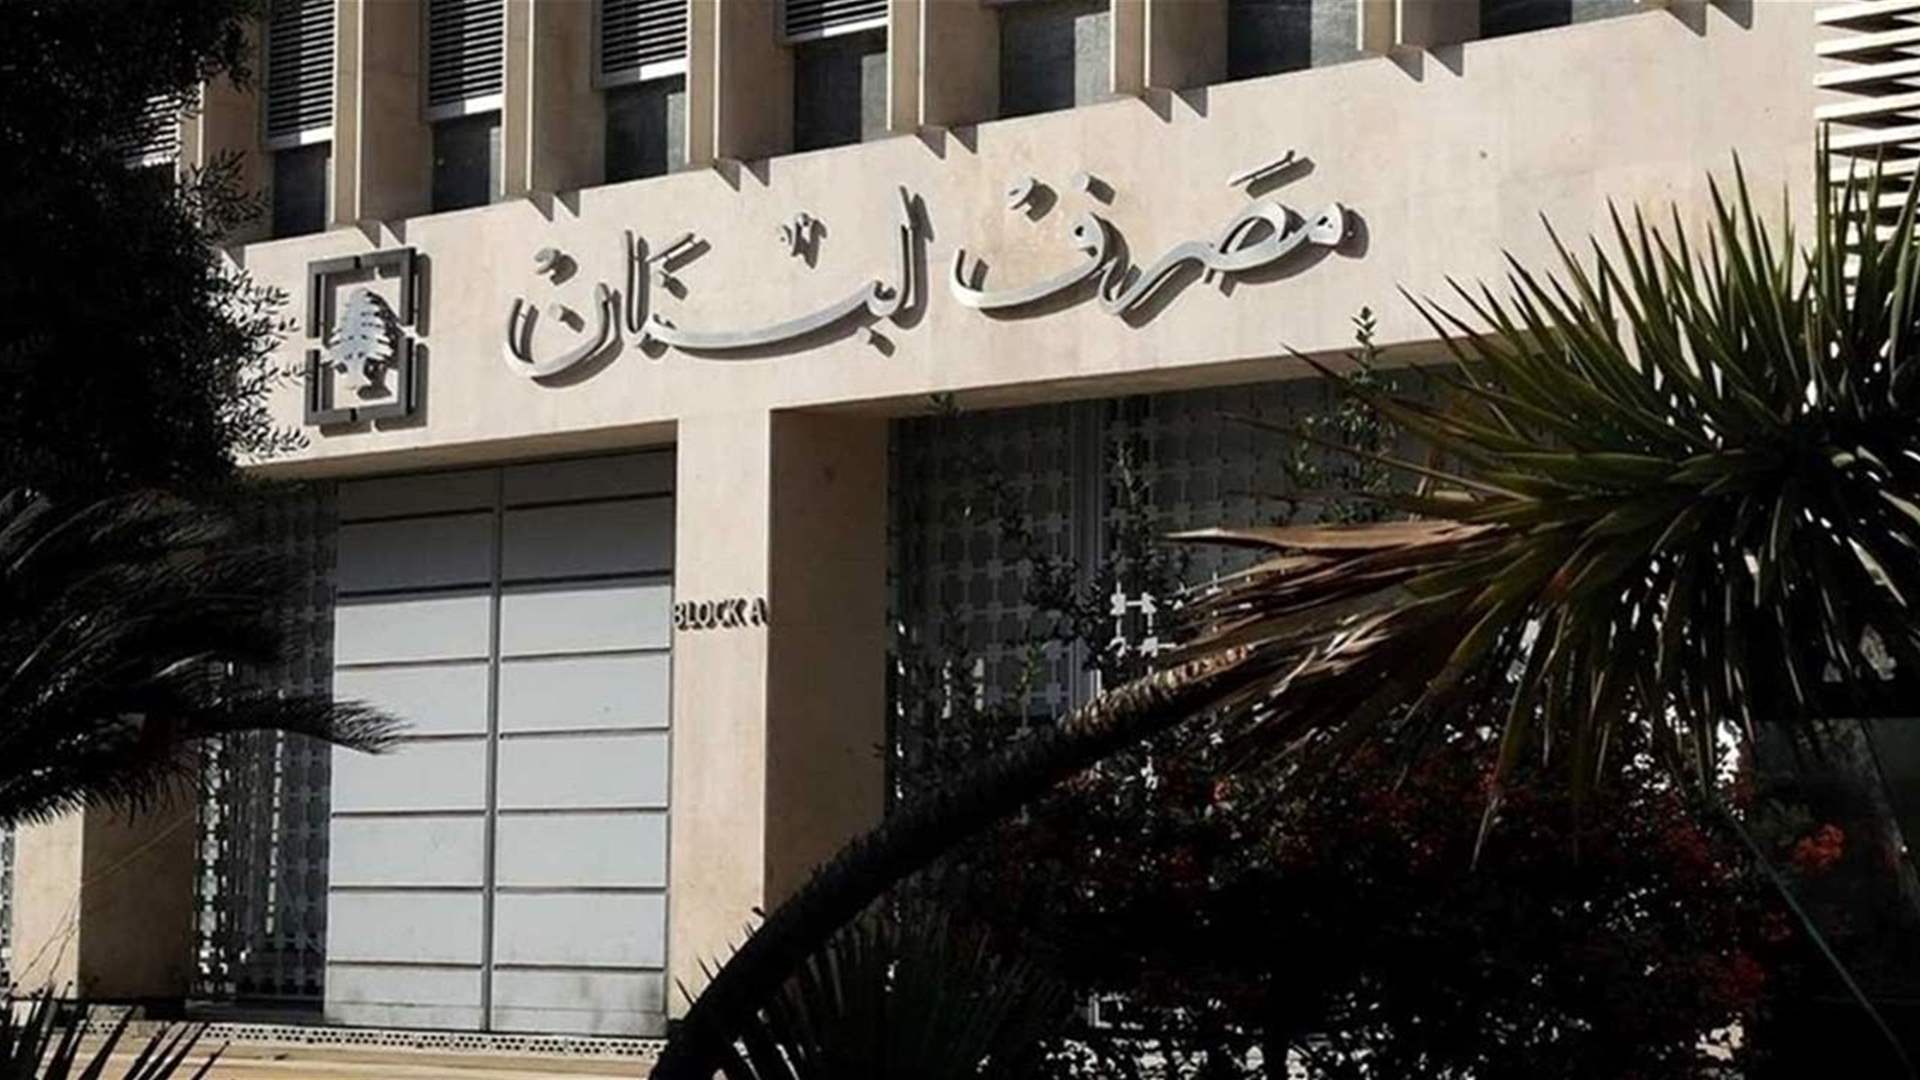  مصرف لبنان: حجم التداول على SAYRAFA بلغ اليوم 175 مليون دولار بمعدل 86200 ليرة